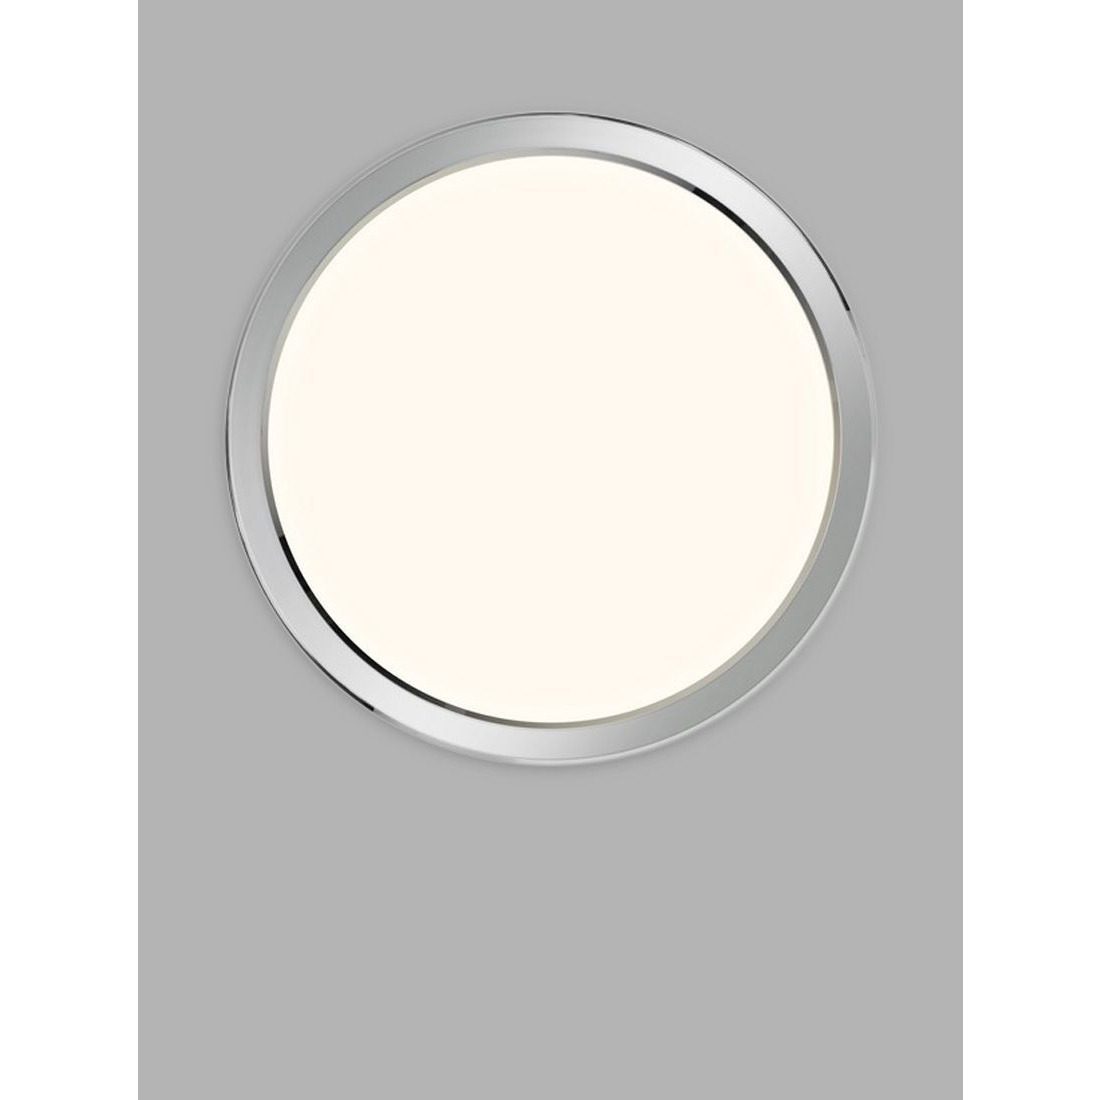 Nordlux Oja 29 Flush Bathroom Ceiling Light, White/Chrome - image 1